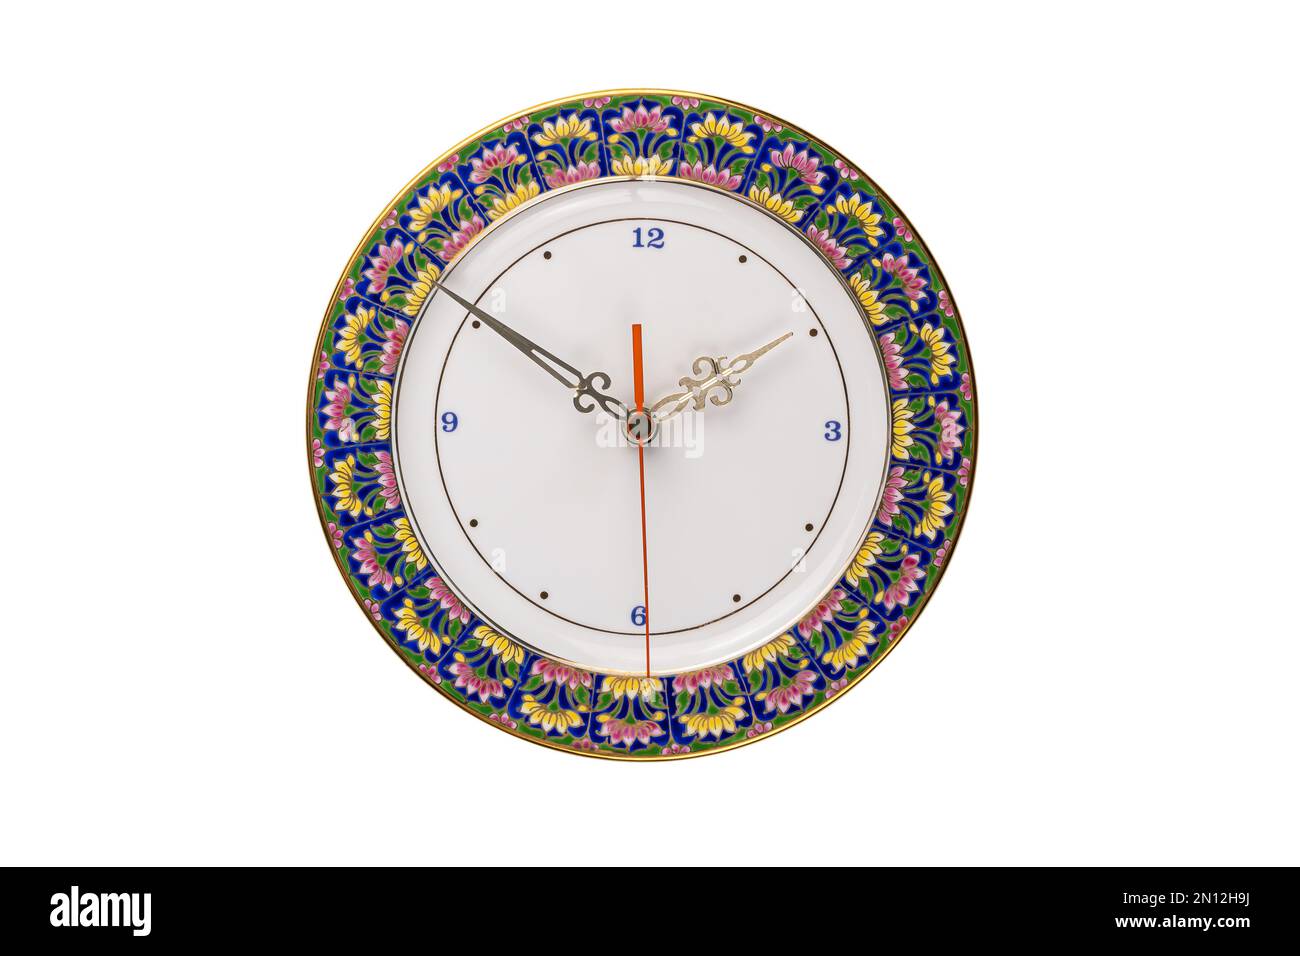 Benjarong Uhr, das schöne Souvenir von Thailand, Design als Porzellanteller mit fünf Farben Blumen Malerei, isoliert auf weißem Hintergrund mit Stockfoto